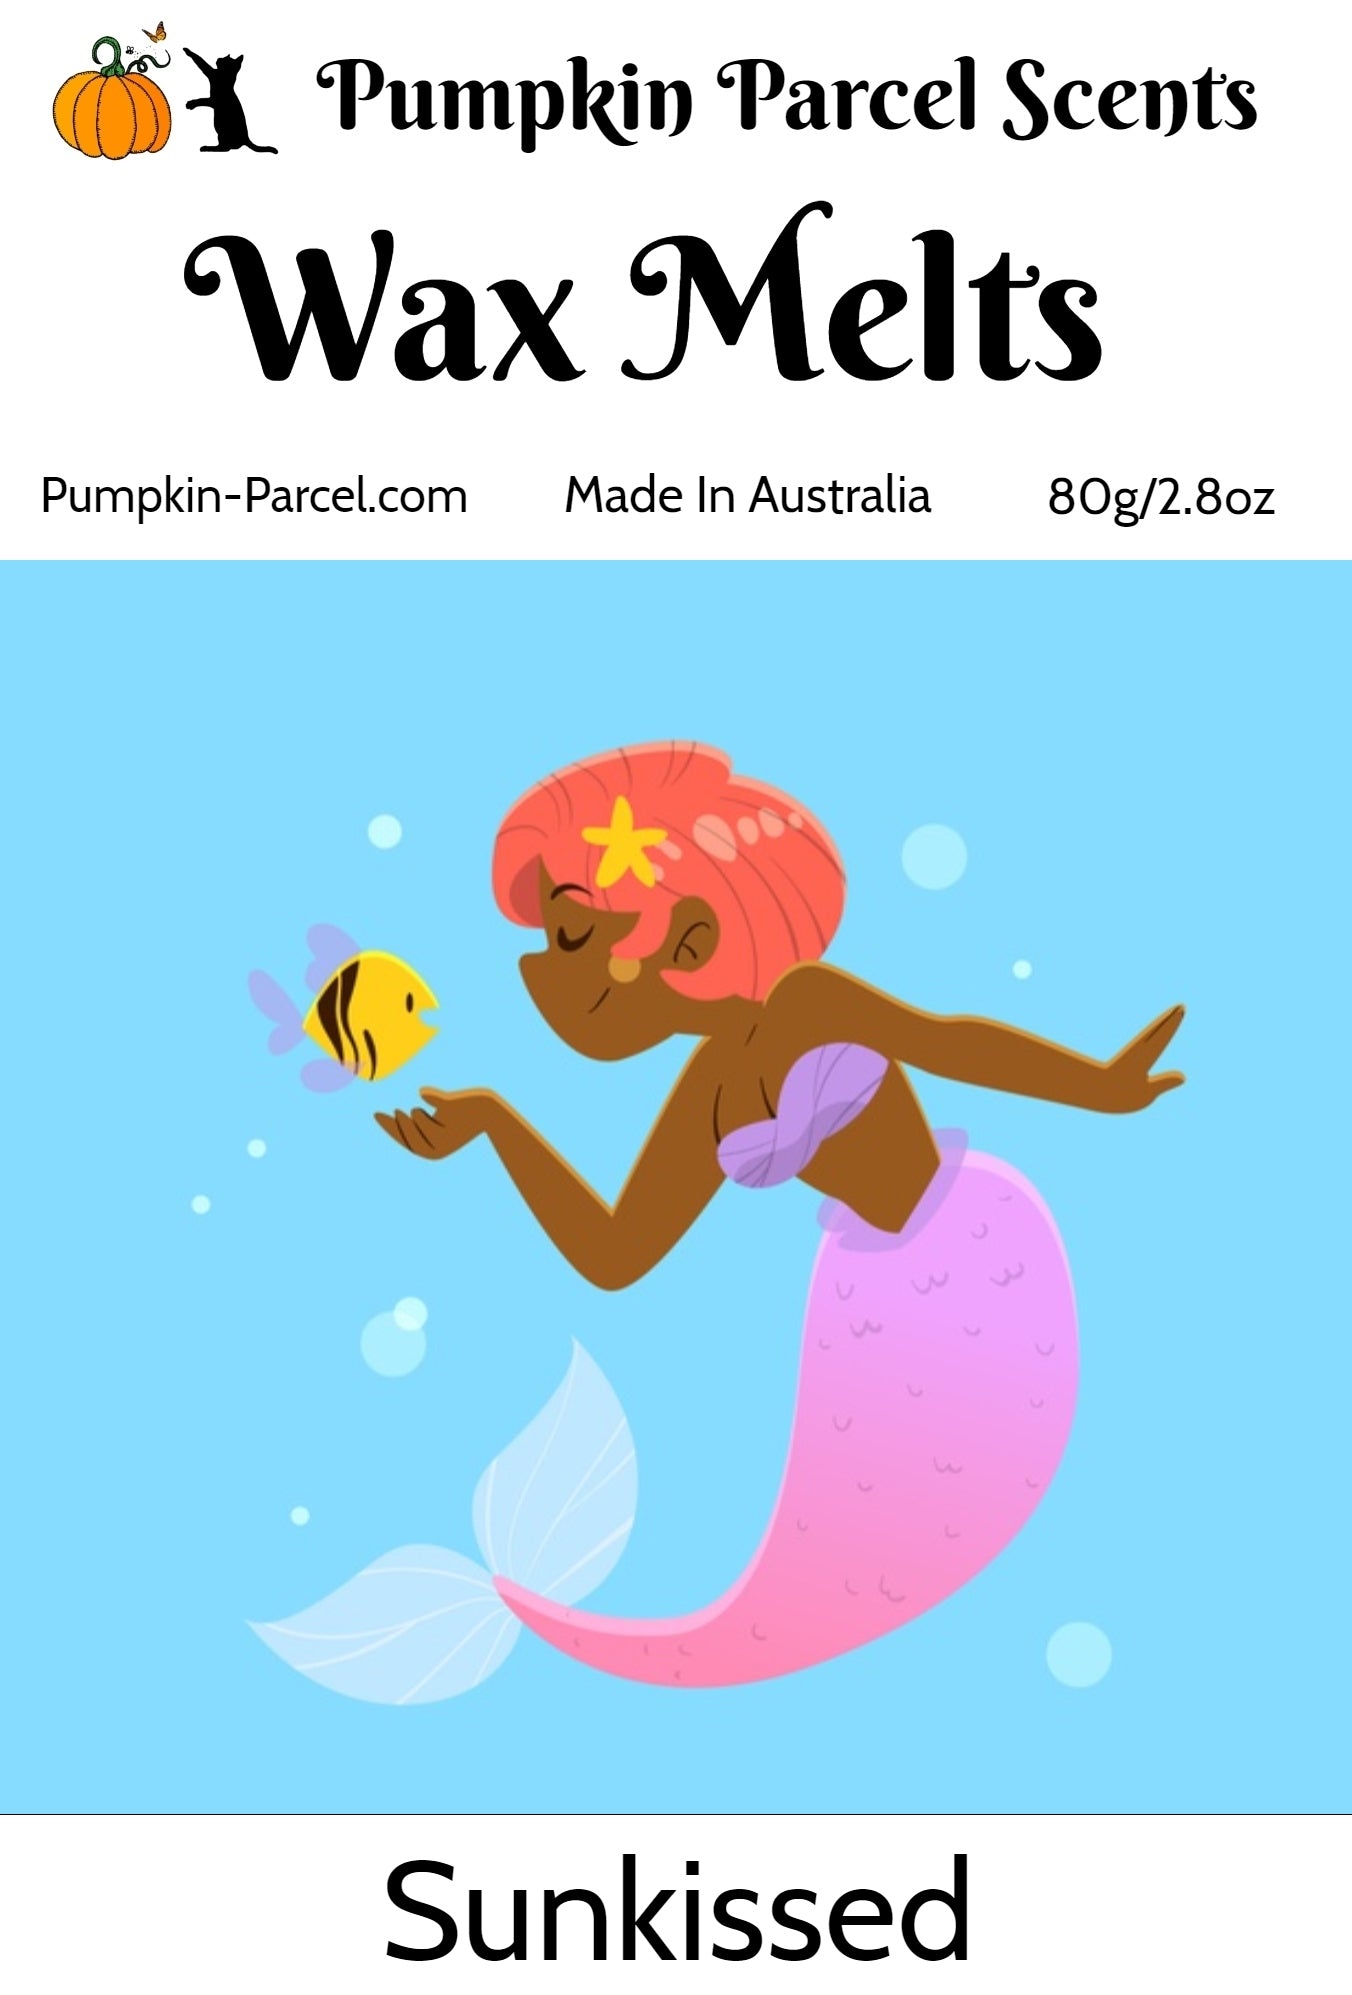 Sunkissed - Mermaid Wax Melts